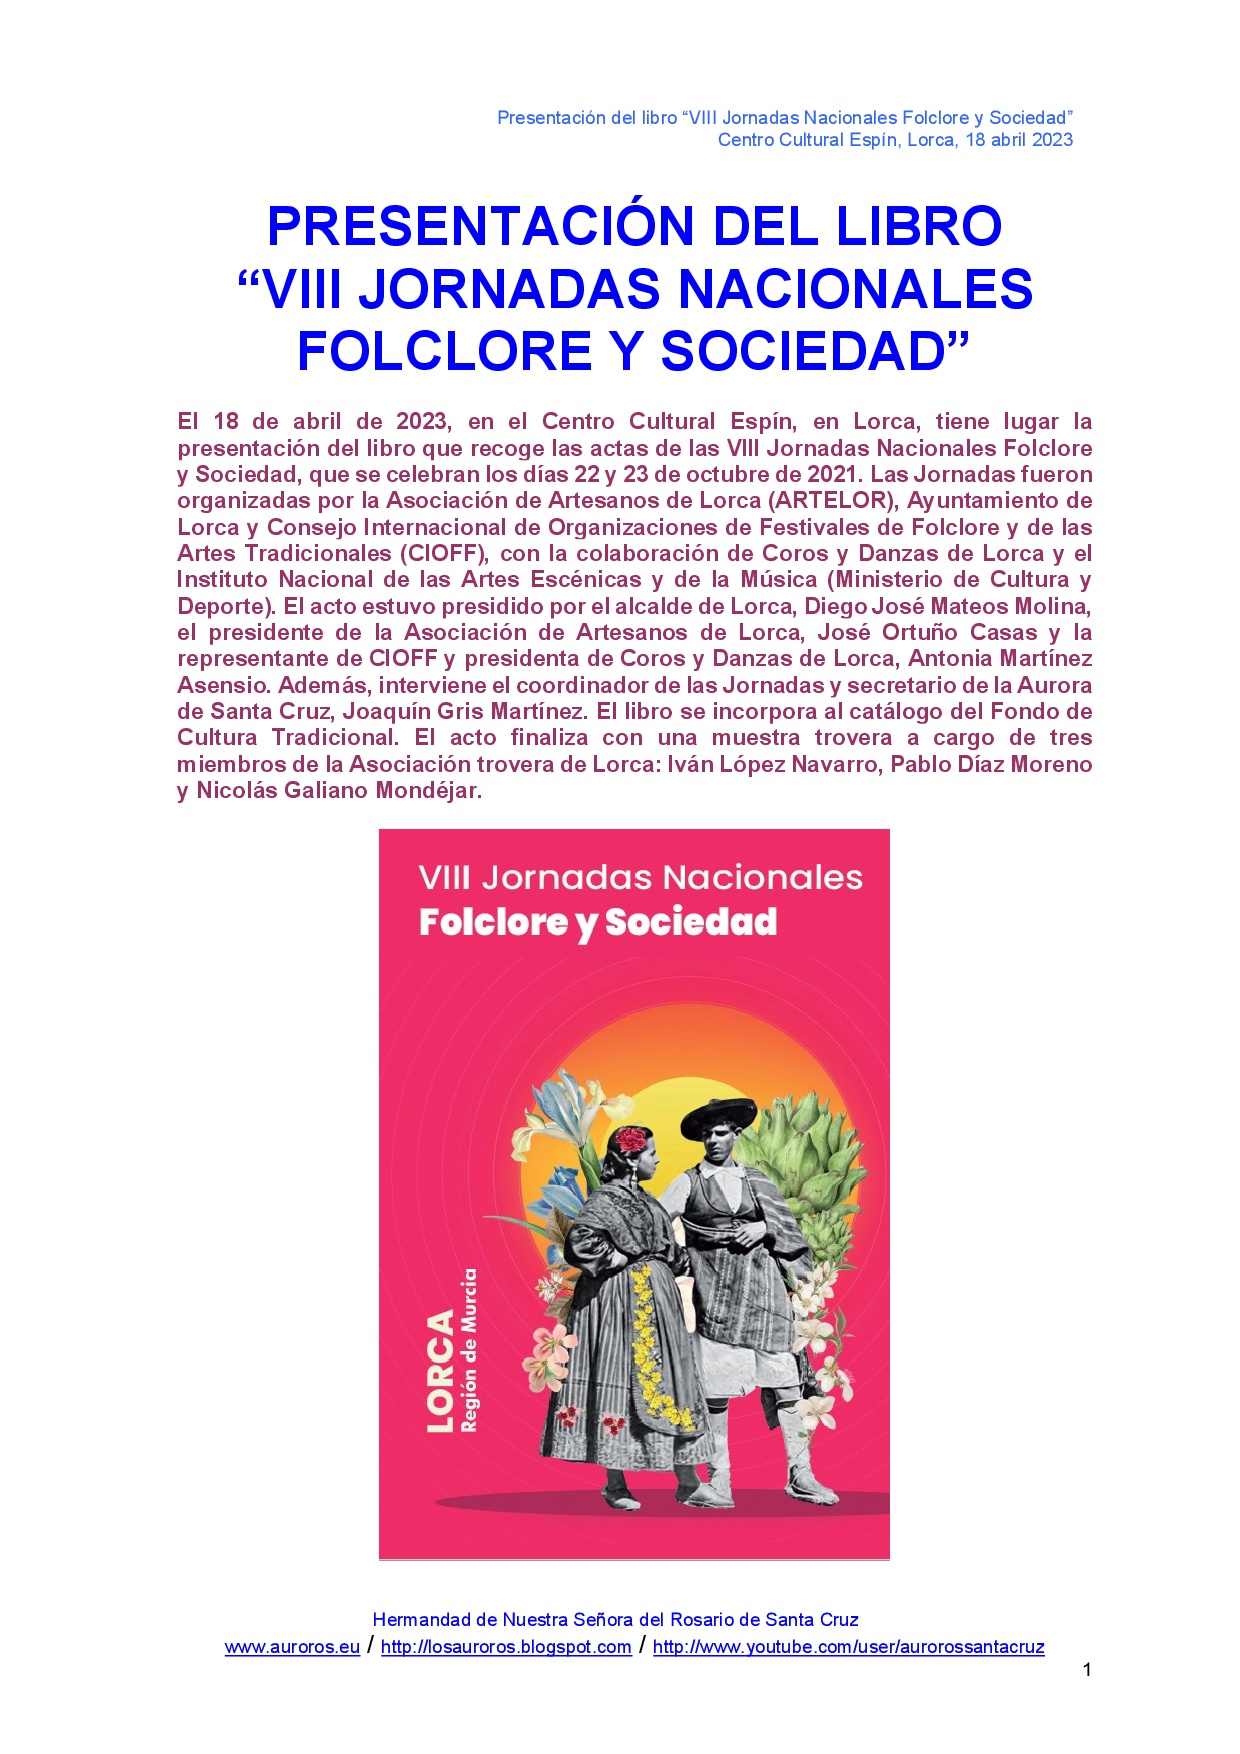 PRESENTACIÓN DEL LIBRO “VIII JORNADAS NACIONALES FOLCLORE Y SOCIEDAD”